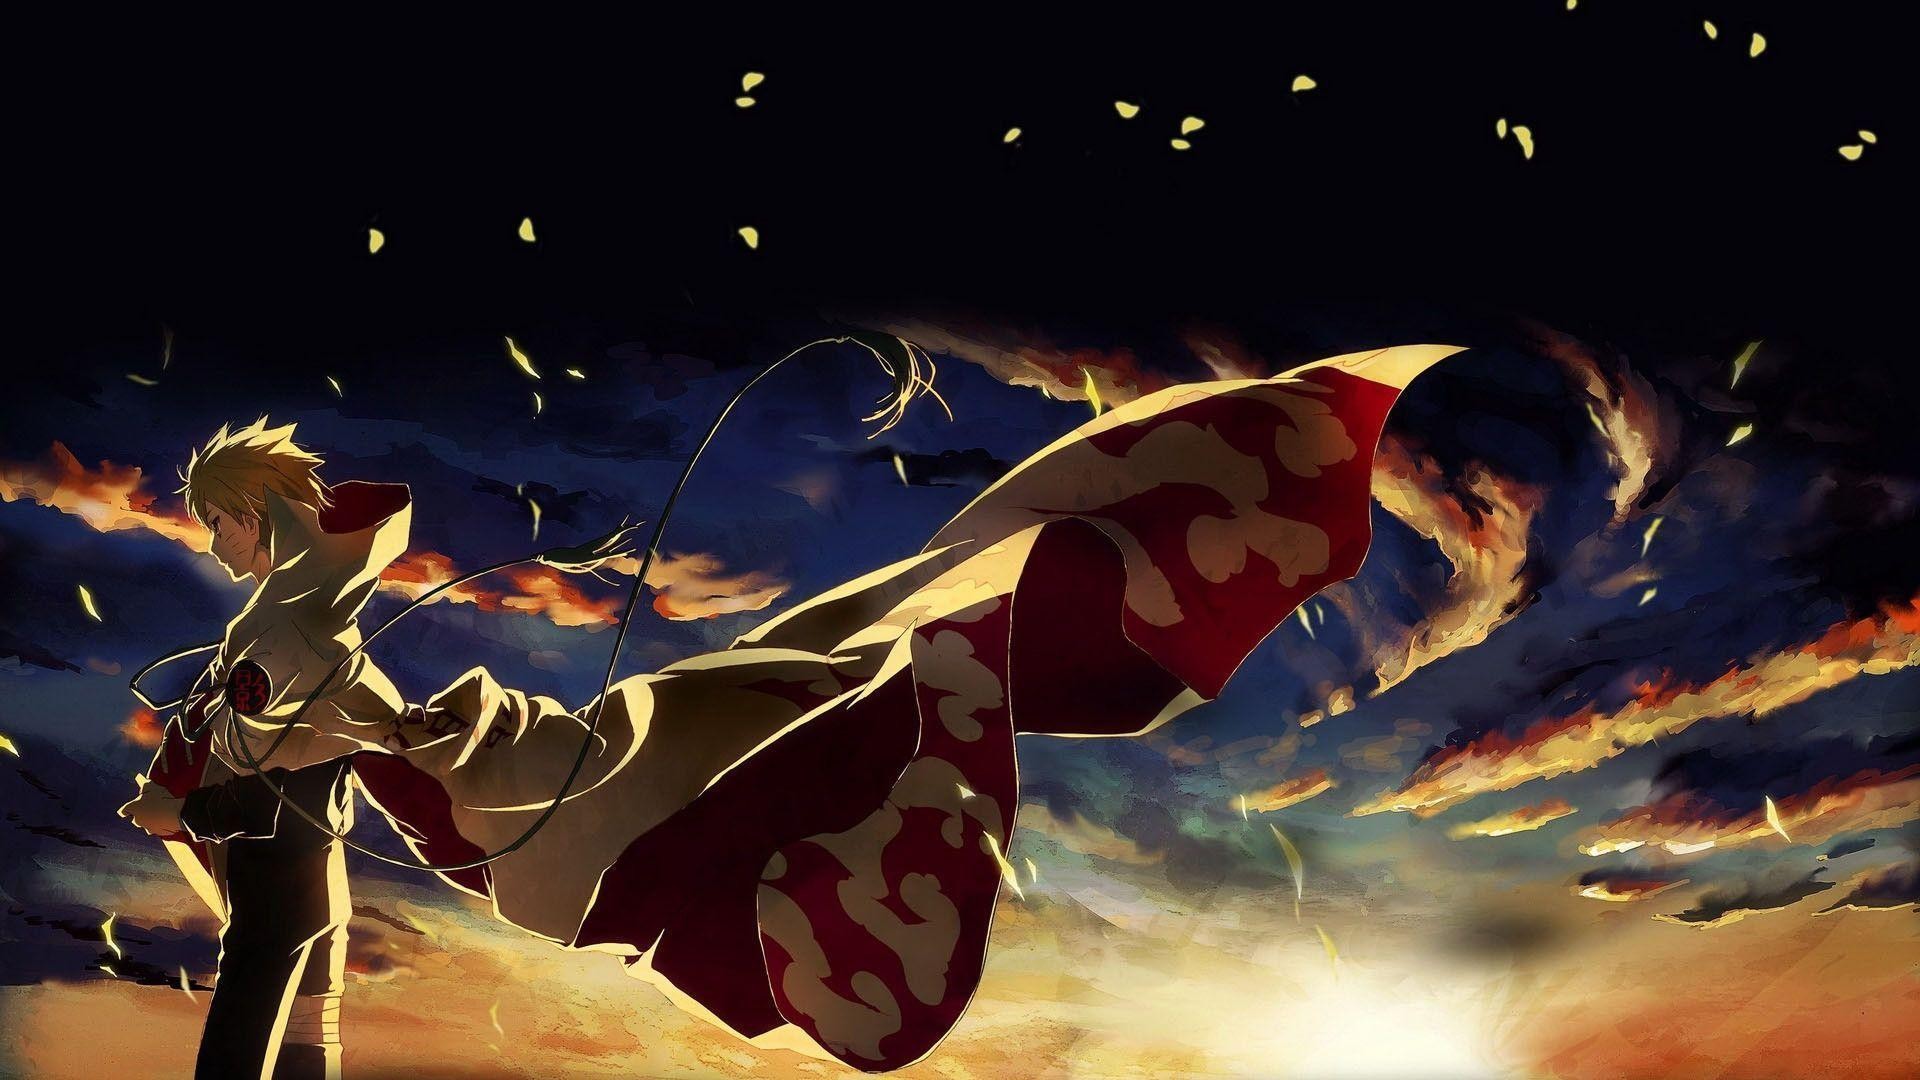 anime wallpaper 1600x900,cg kunstwerk,erfundener charakter,himmel,superheld,illustration